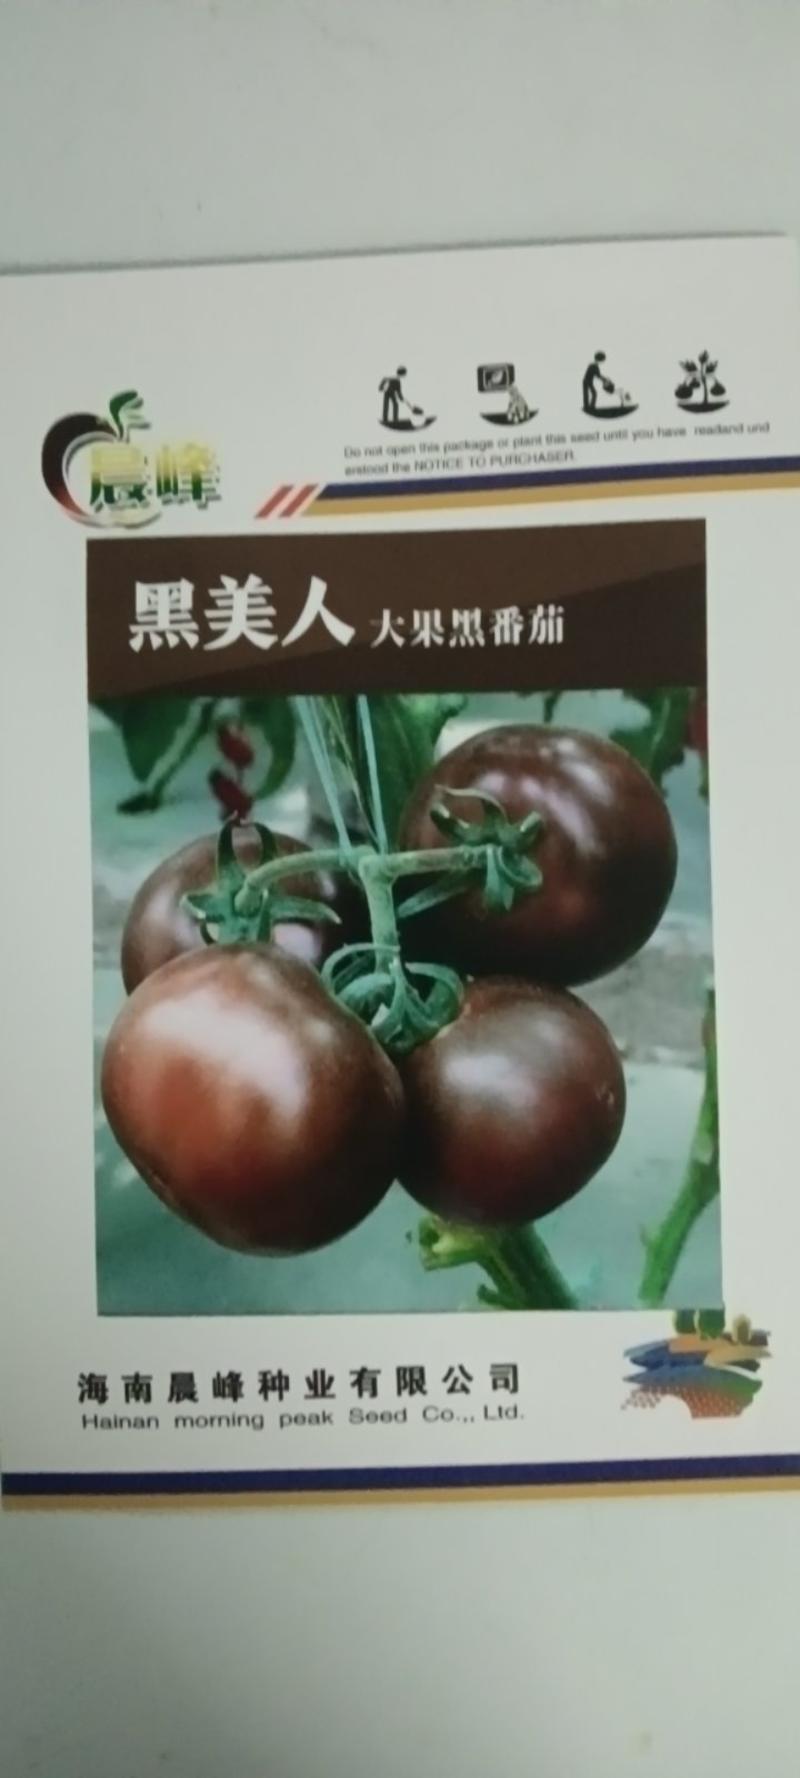 黑美人大果紫黑色番茄品种，美观特色，营养价值高，高产，